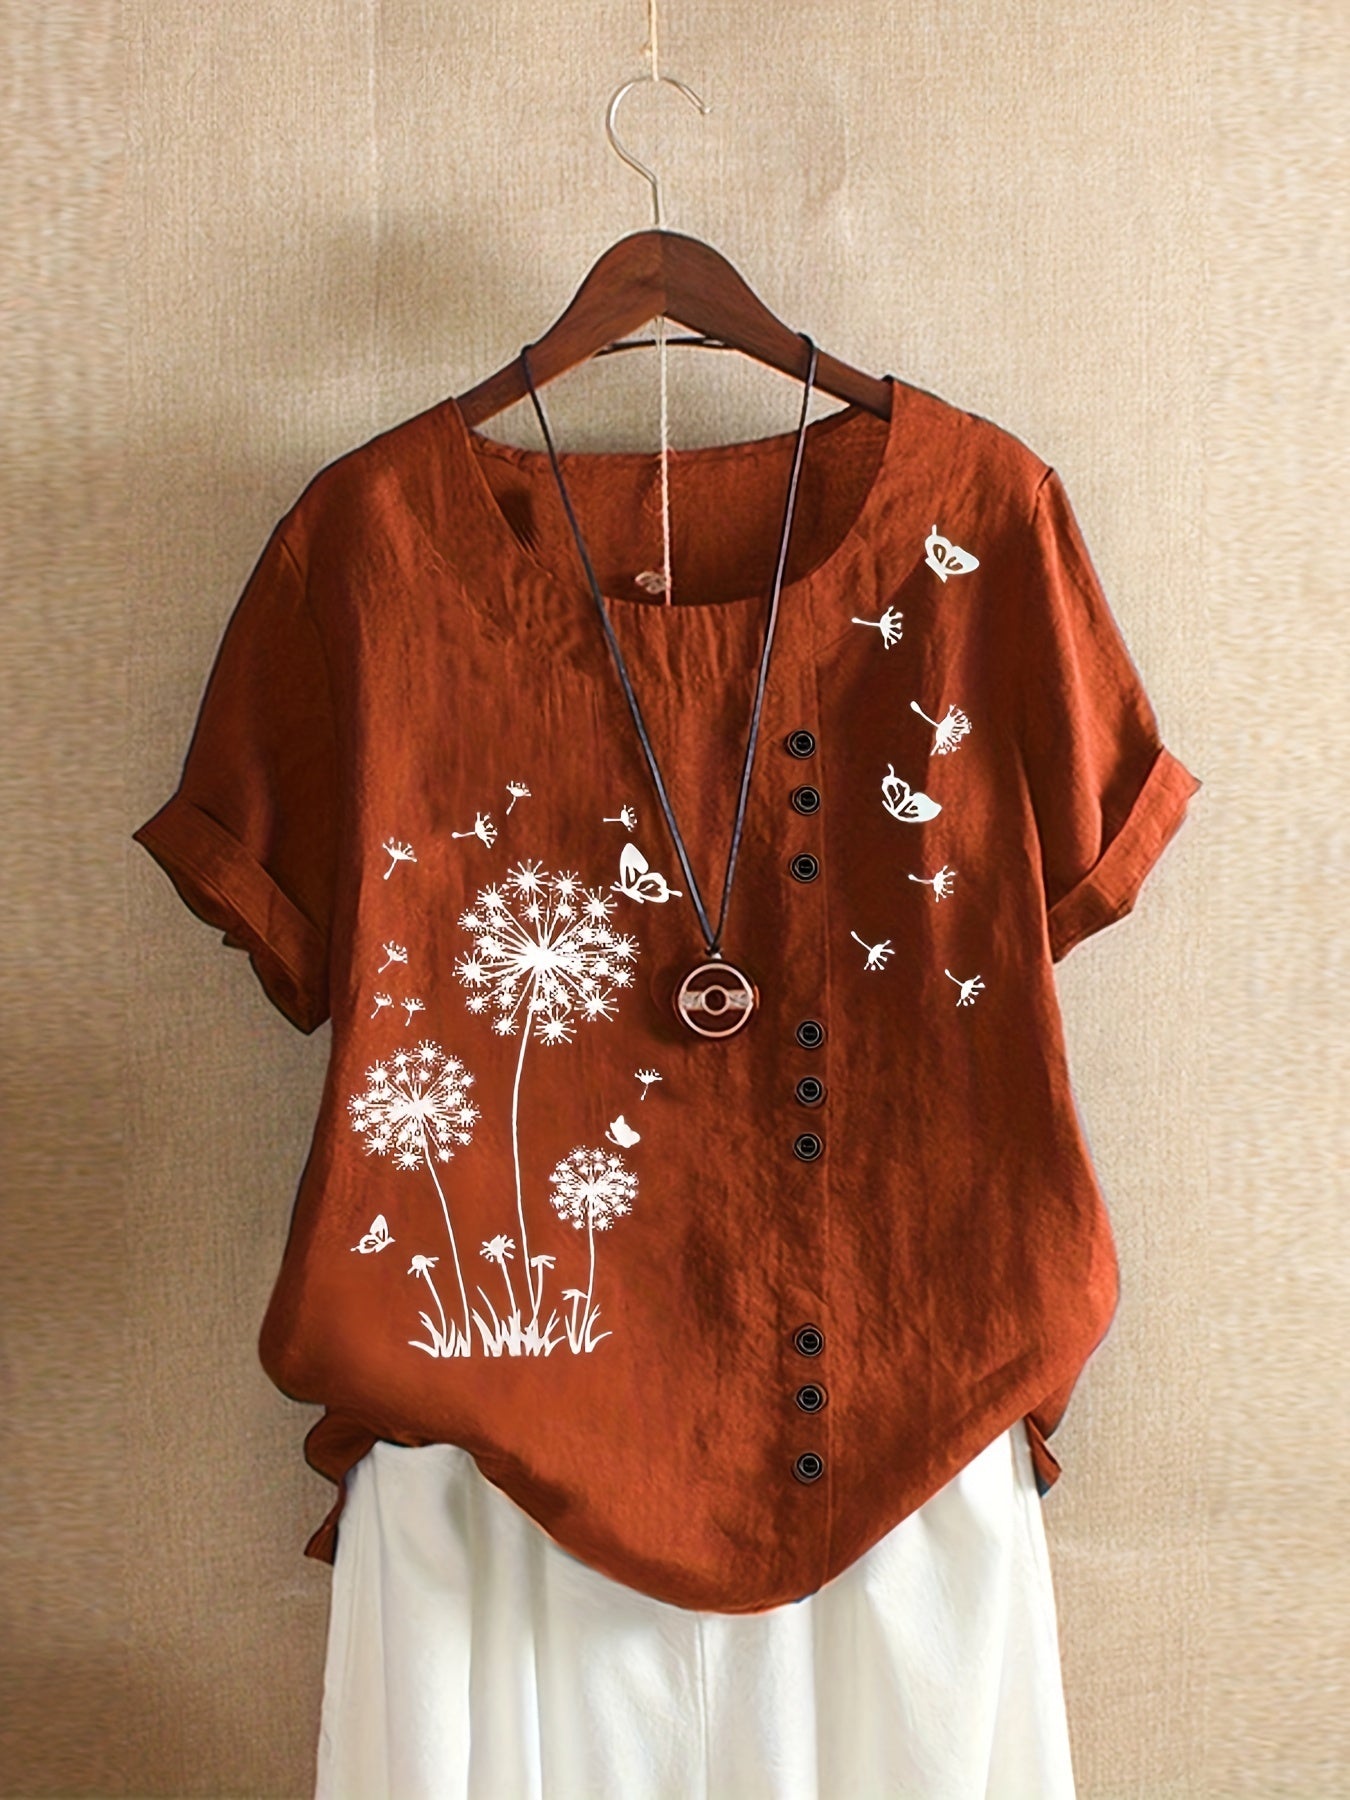 Vzyzv Dandelion Print Blouse, Casual Crew Neck Short Sleeve Blouse For Spring & Summer, Women's Clothing